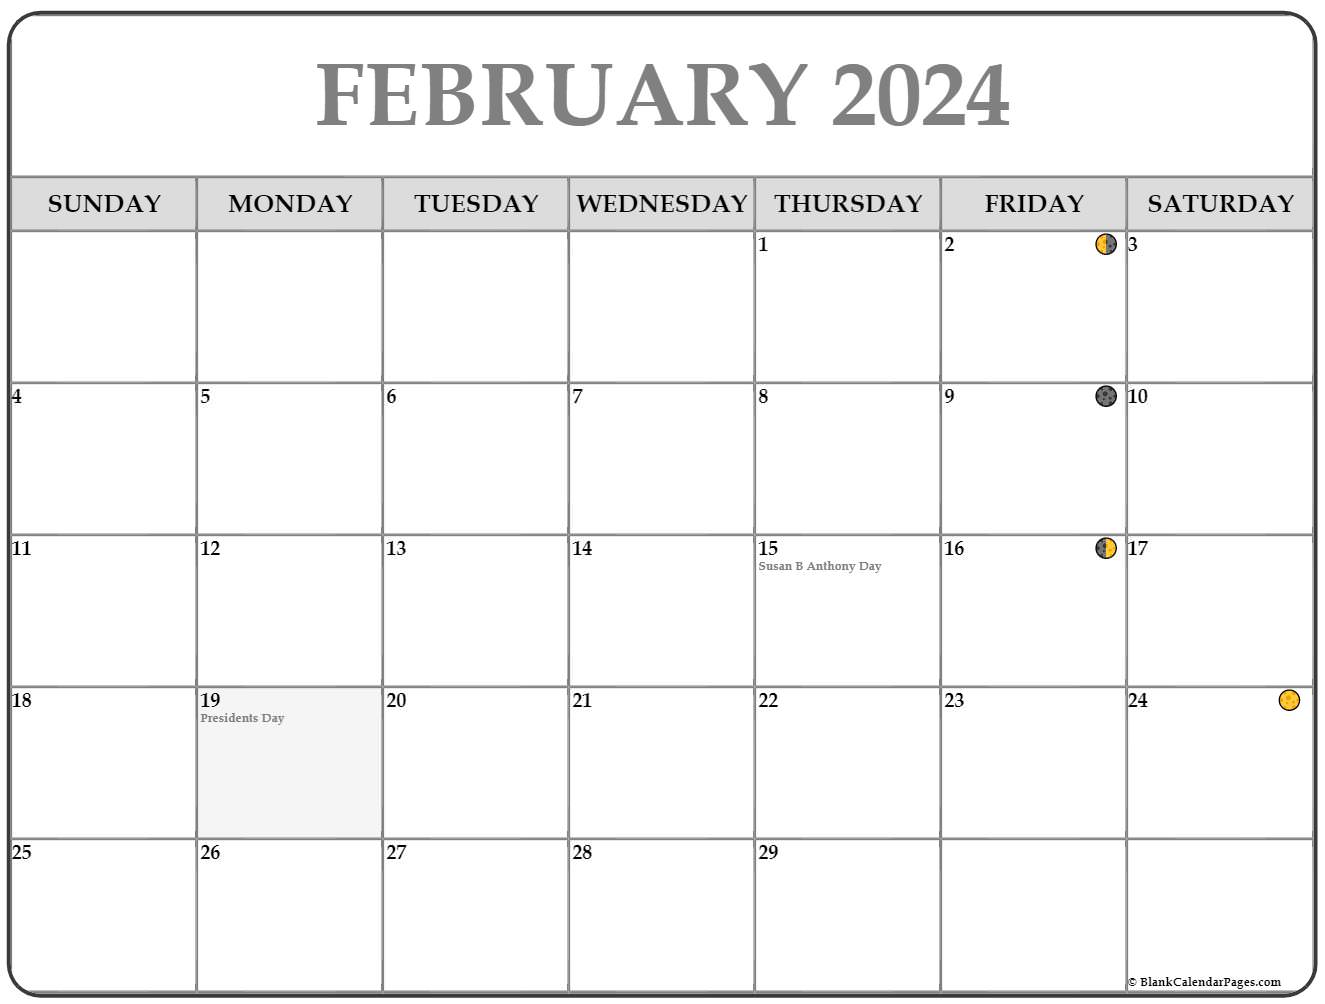 2024 February Calen 2024 Moon Calendar With Holidays Cherri Crystal